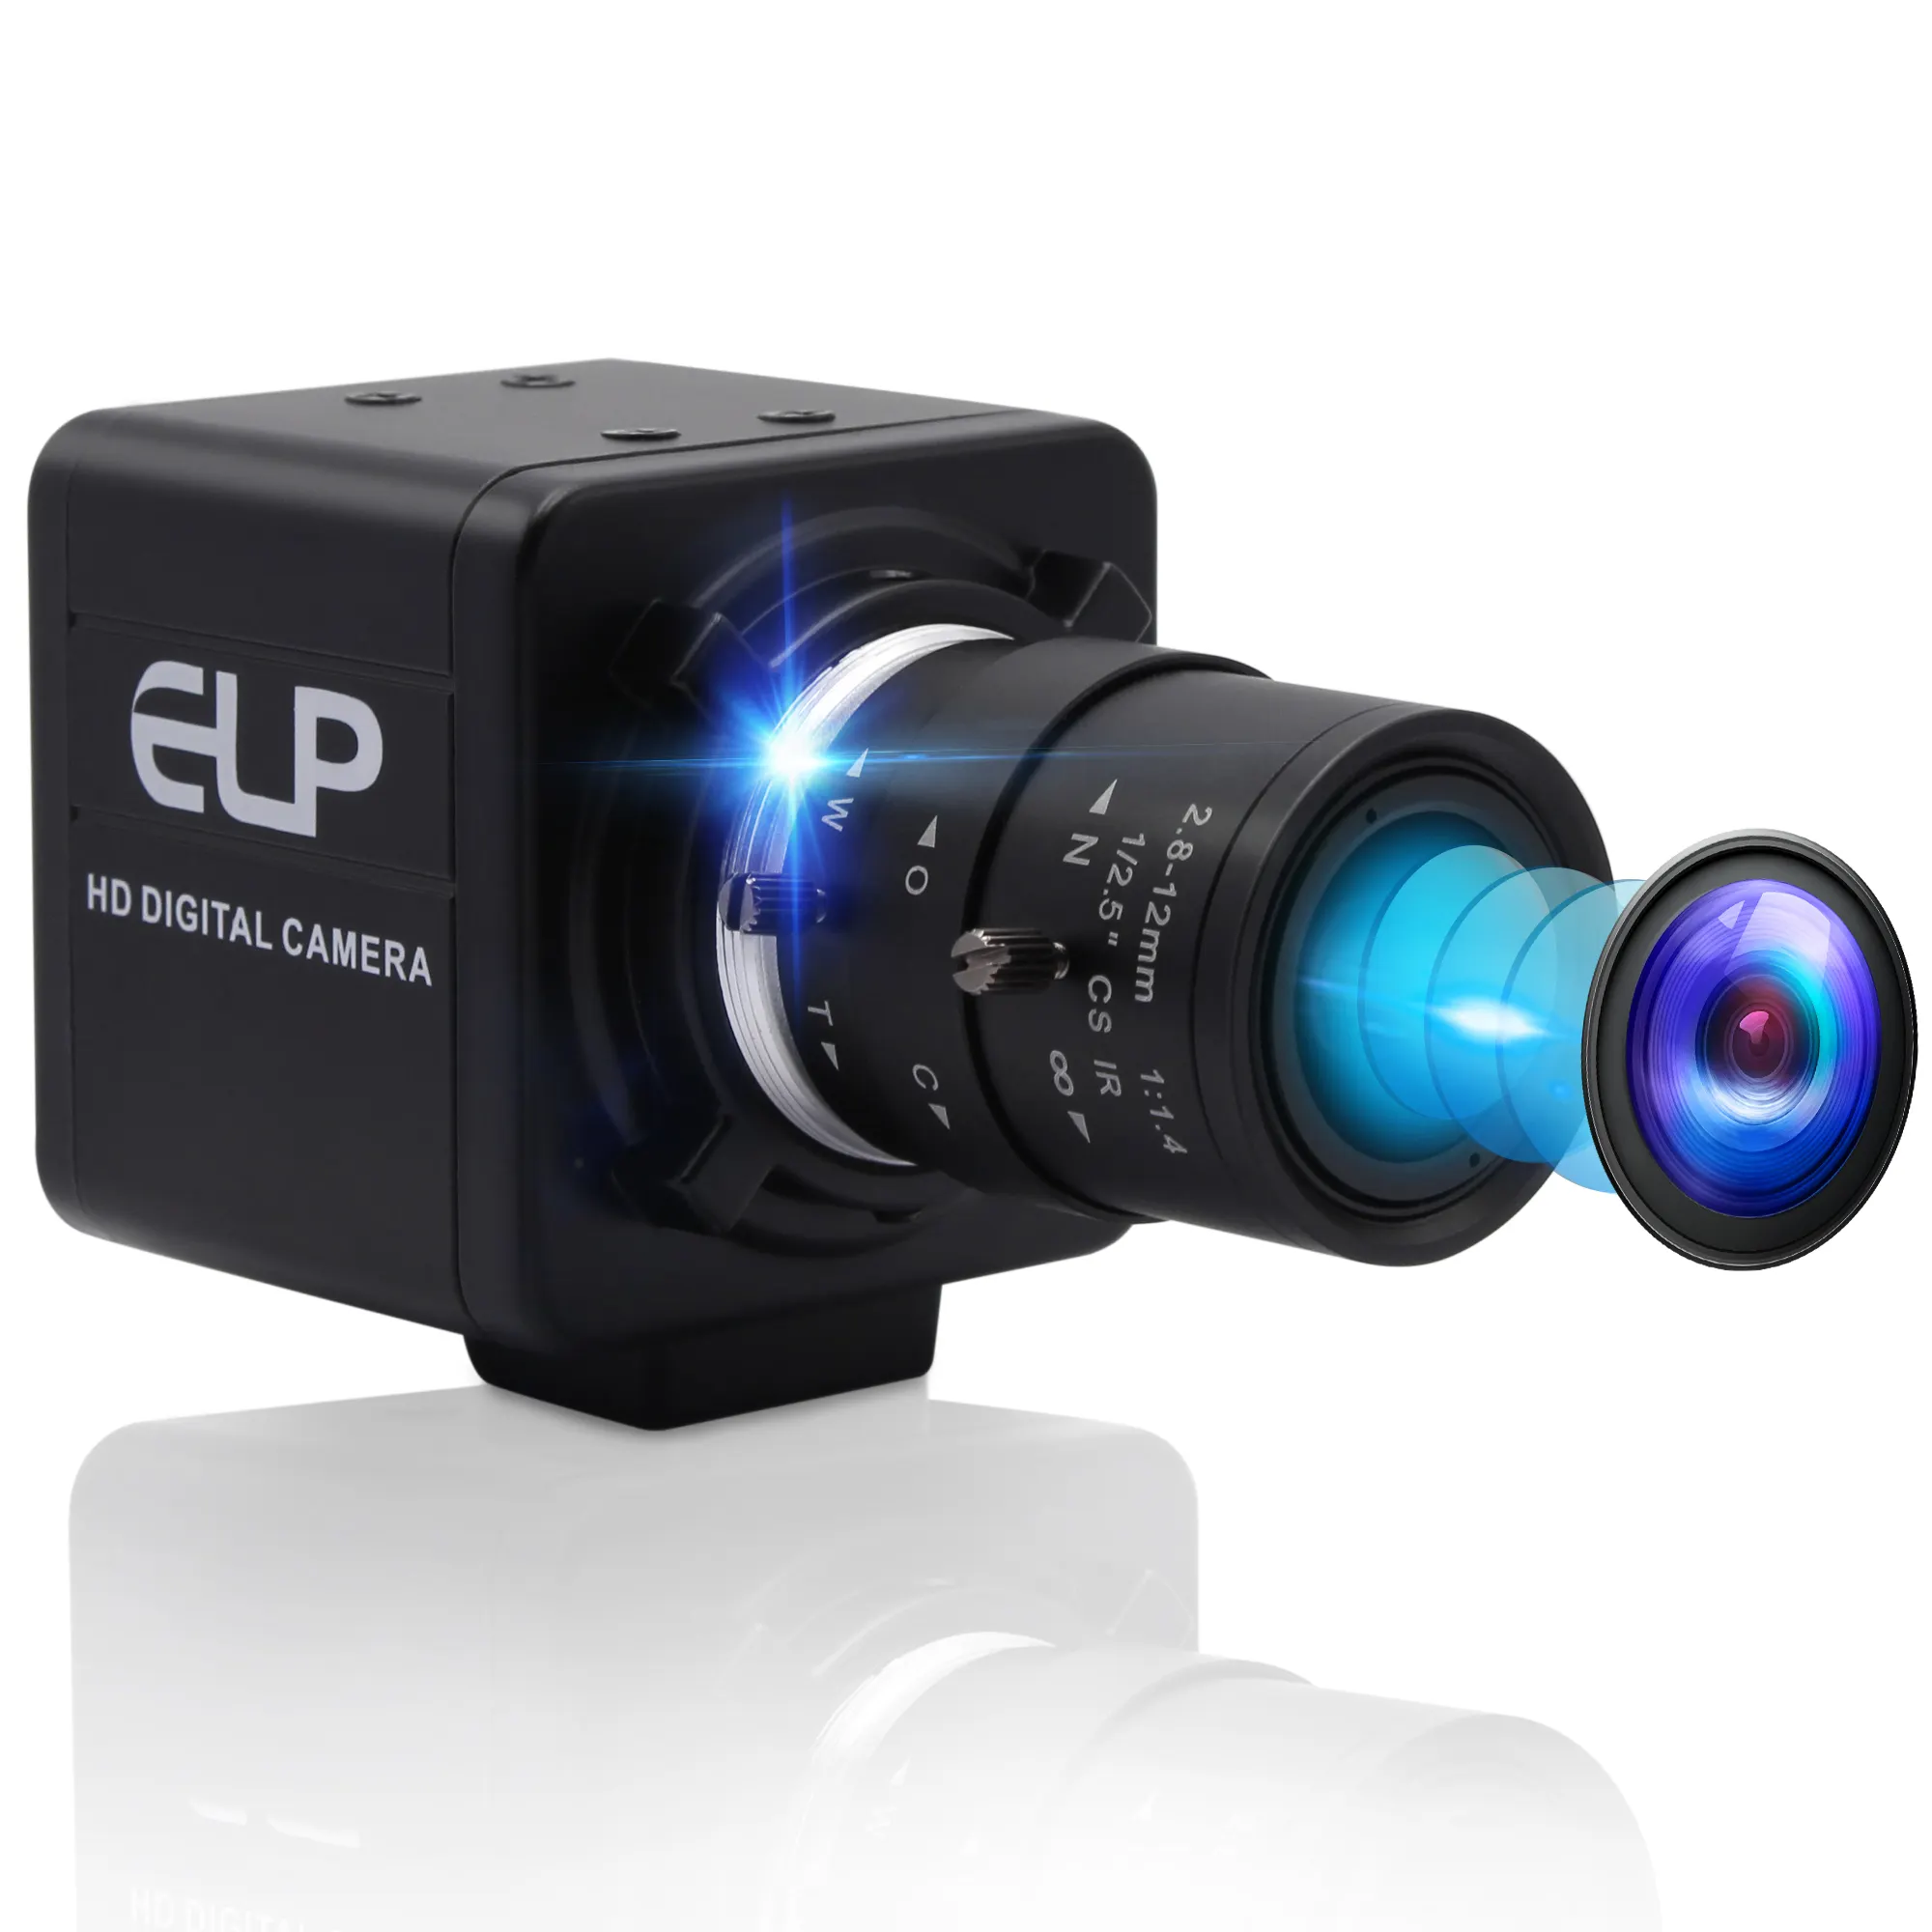 Caméra USB HD 4K 3840x2160 30fps, Webcam avec capteur Sony imx323, Zoom manuel, lentille varifocale, pour balayage de documents